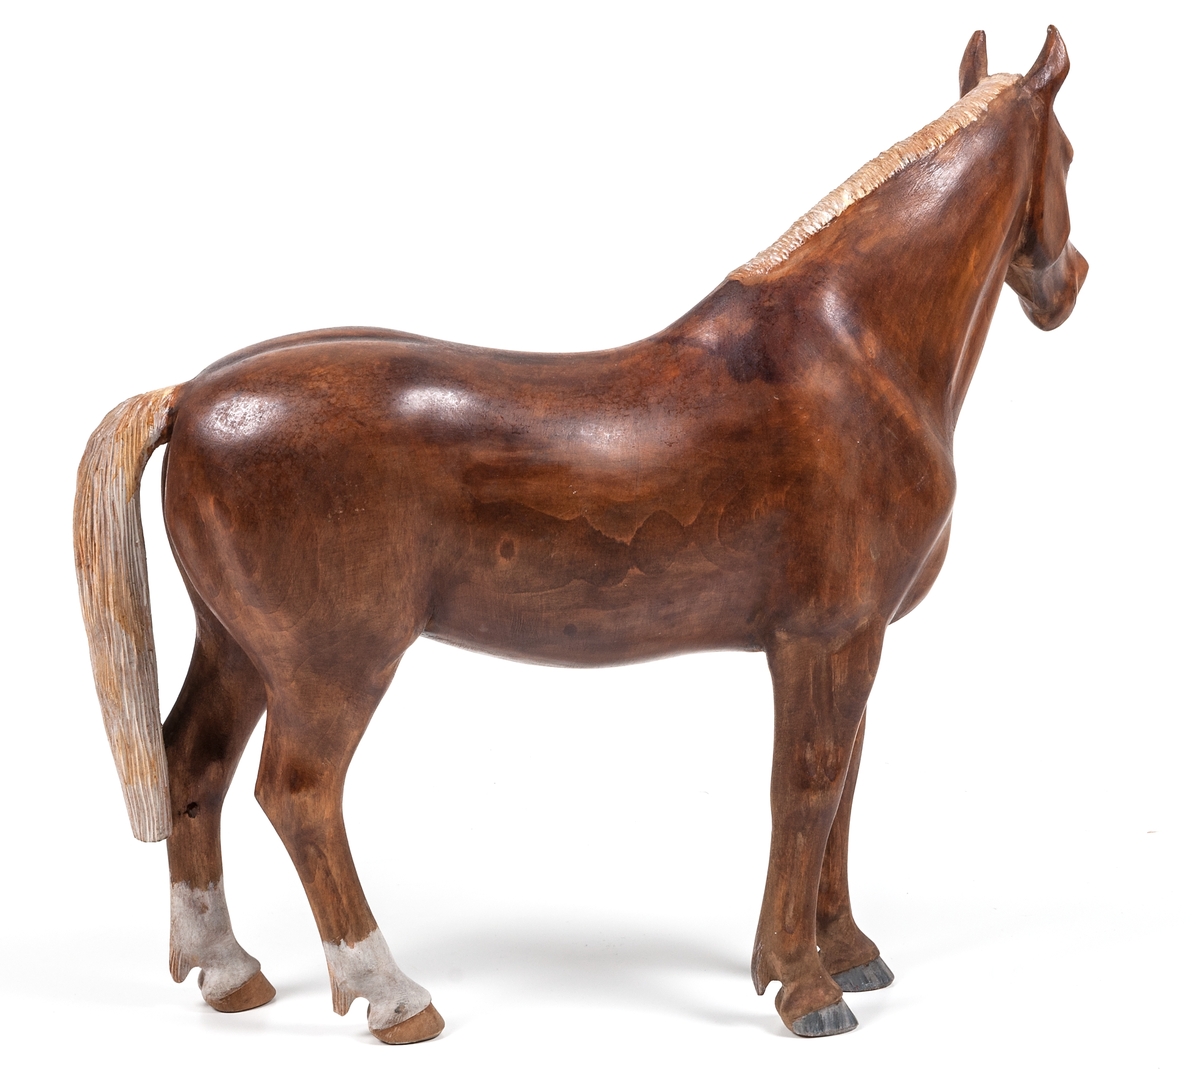 Träskulptur "Häst" av Lars From (1867-1945) från Hälsingland. Naturalistisk häst. Brun med vit man och svans. Vita strumpor på bakbenen. From brukar signera sina hästar med initialerna LF på någon av de bakre hovarna. Denna häst verkar vara osignerad.